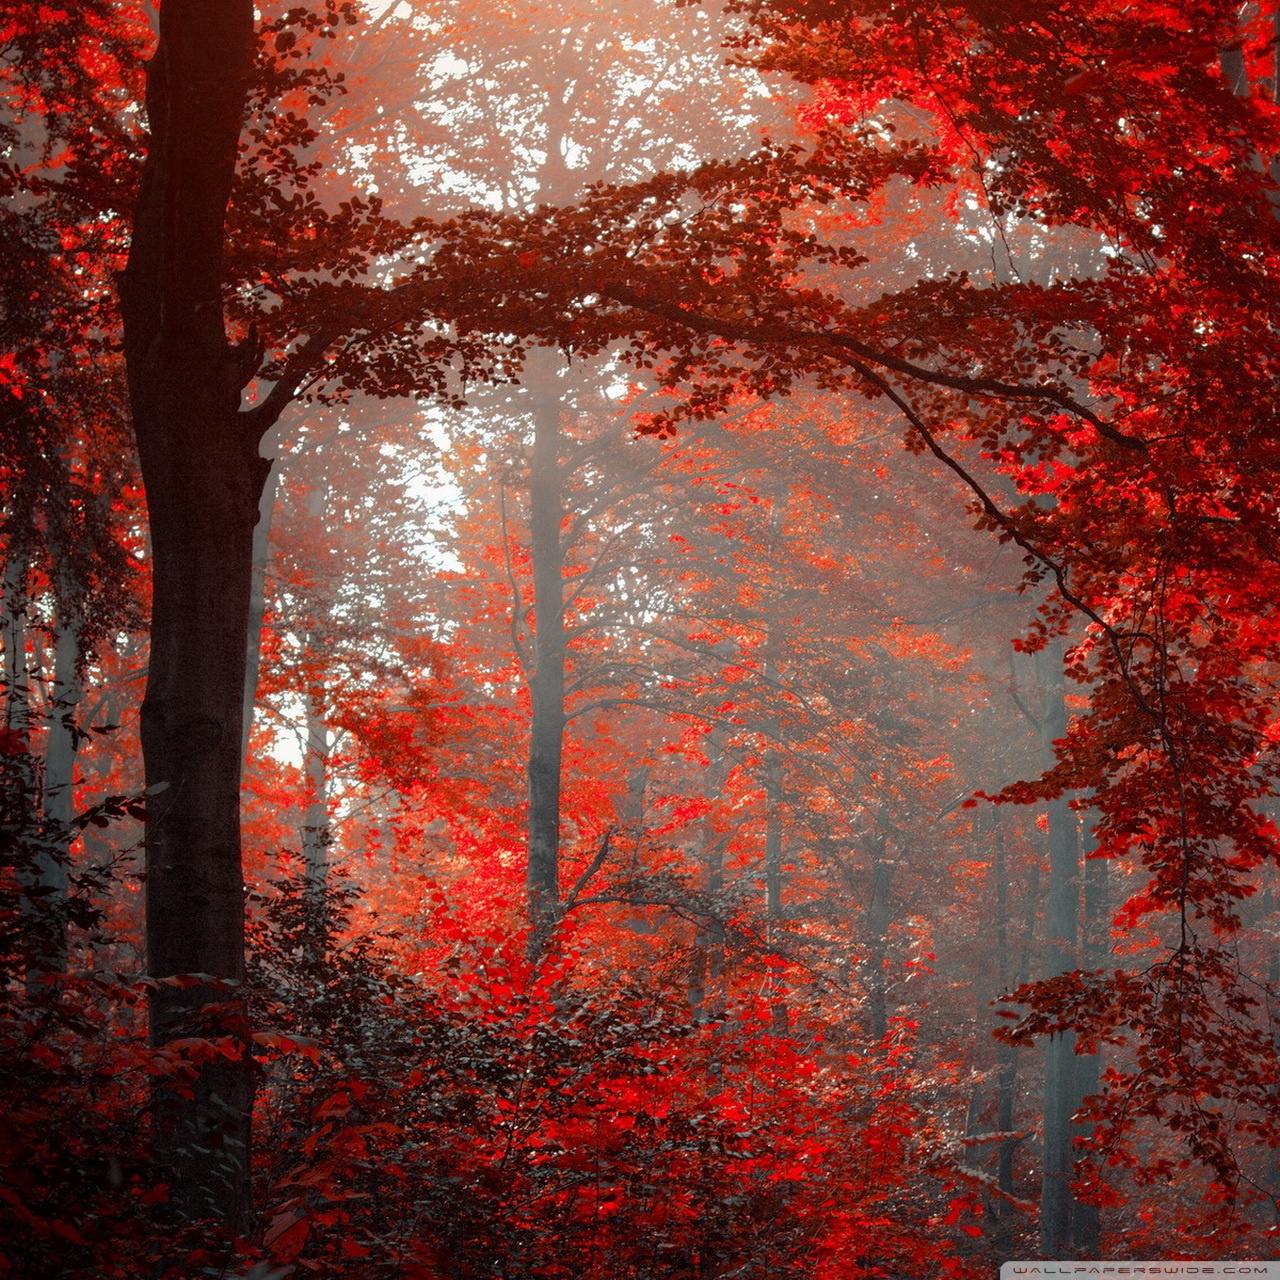 Red Forest Ultra HD Desktop Background Wallpaper for 4K UHD TV, Tablet